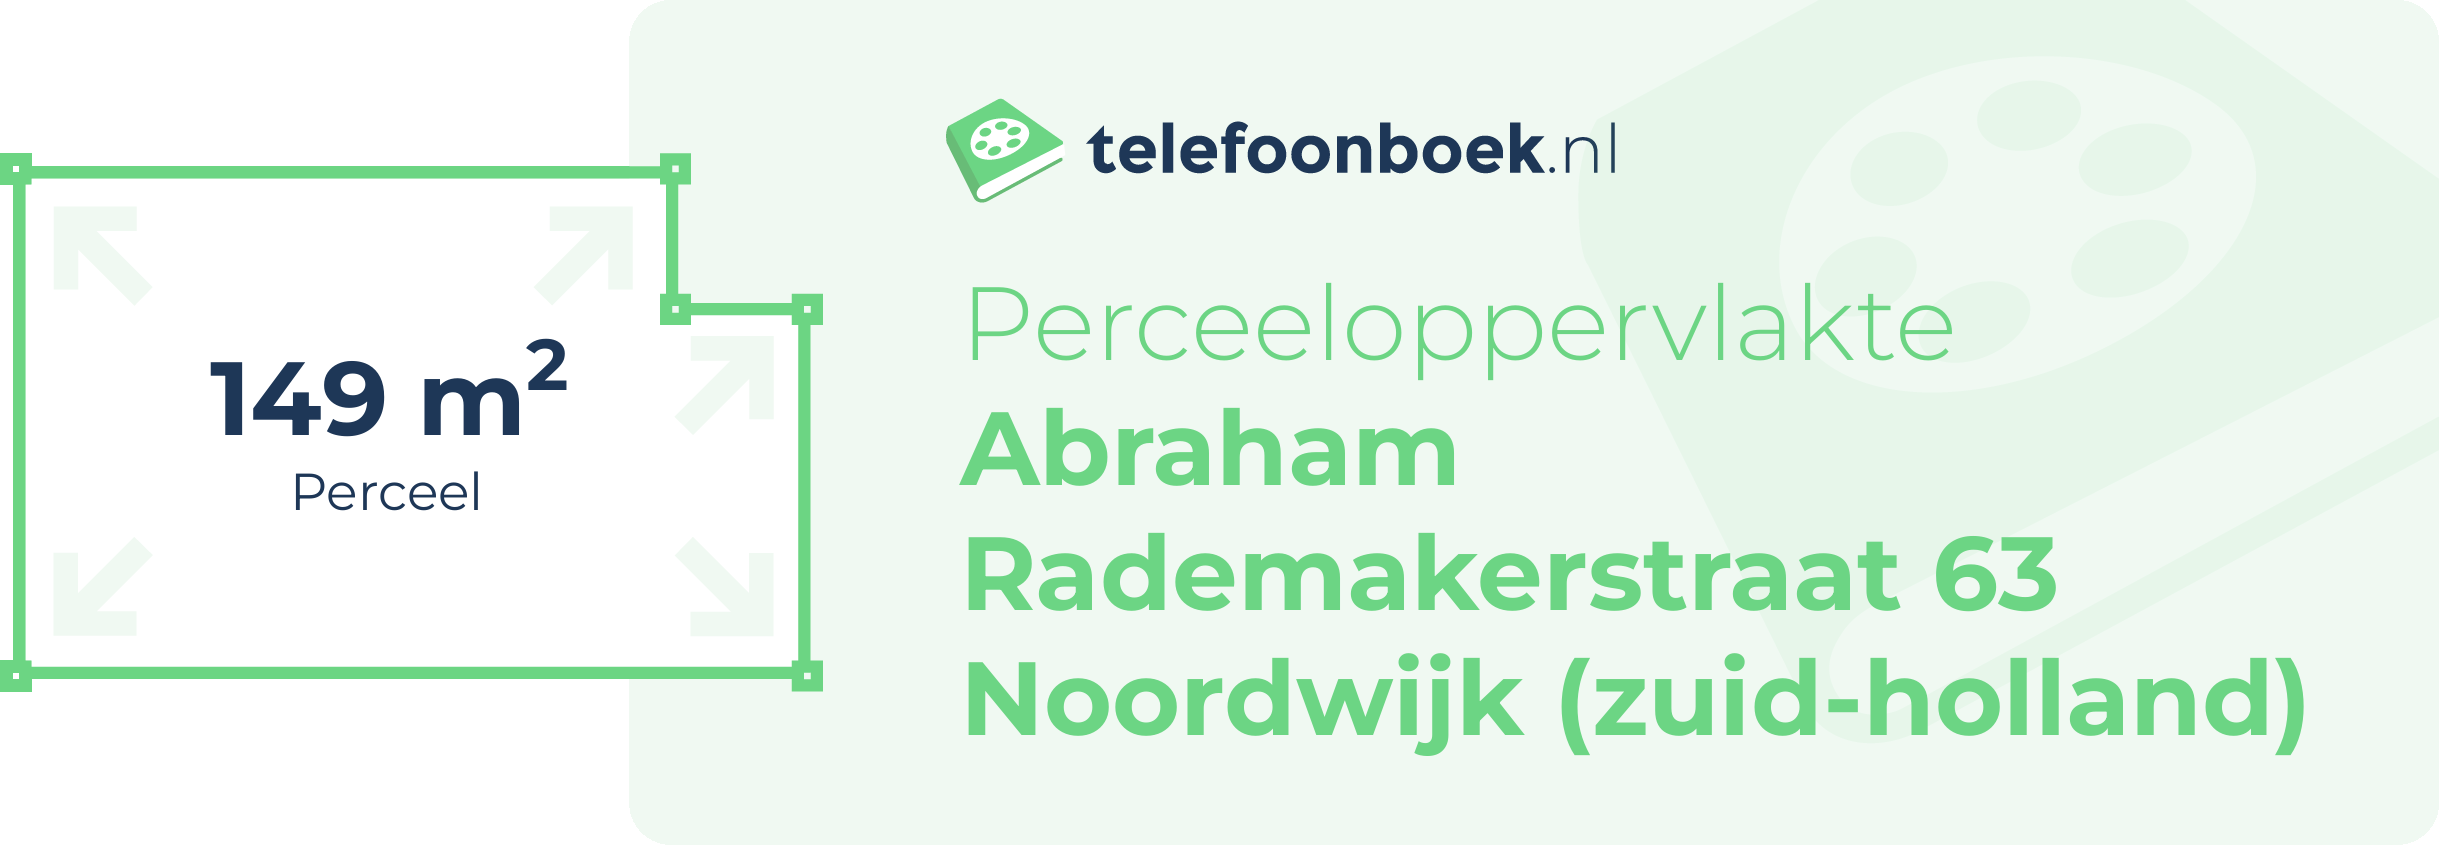 Perceeloppervlakte Abraham Rademakerstraat 63 Noordwijk (Zuid-Holland)